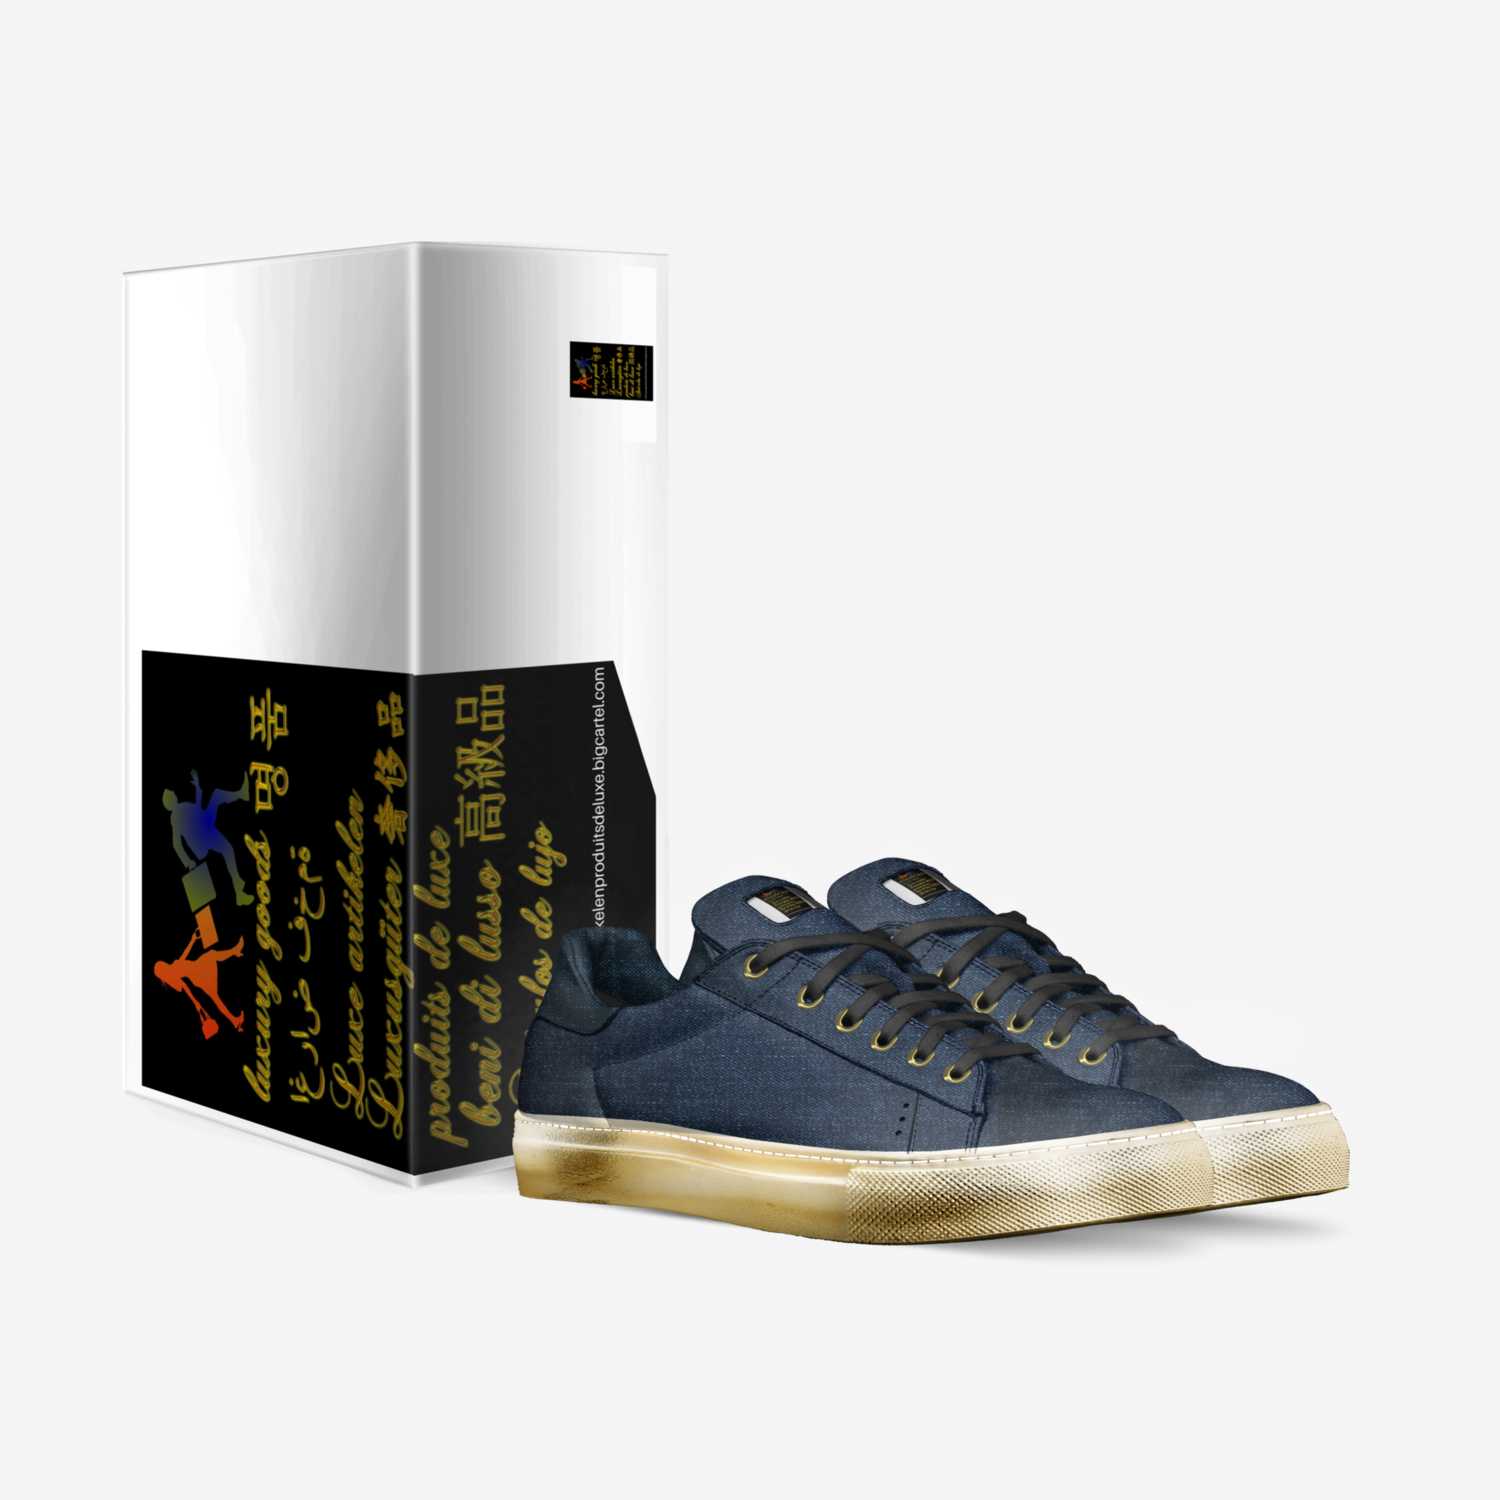 VIP custom made in Italy shoes by Laaziz Belgium | Box view